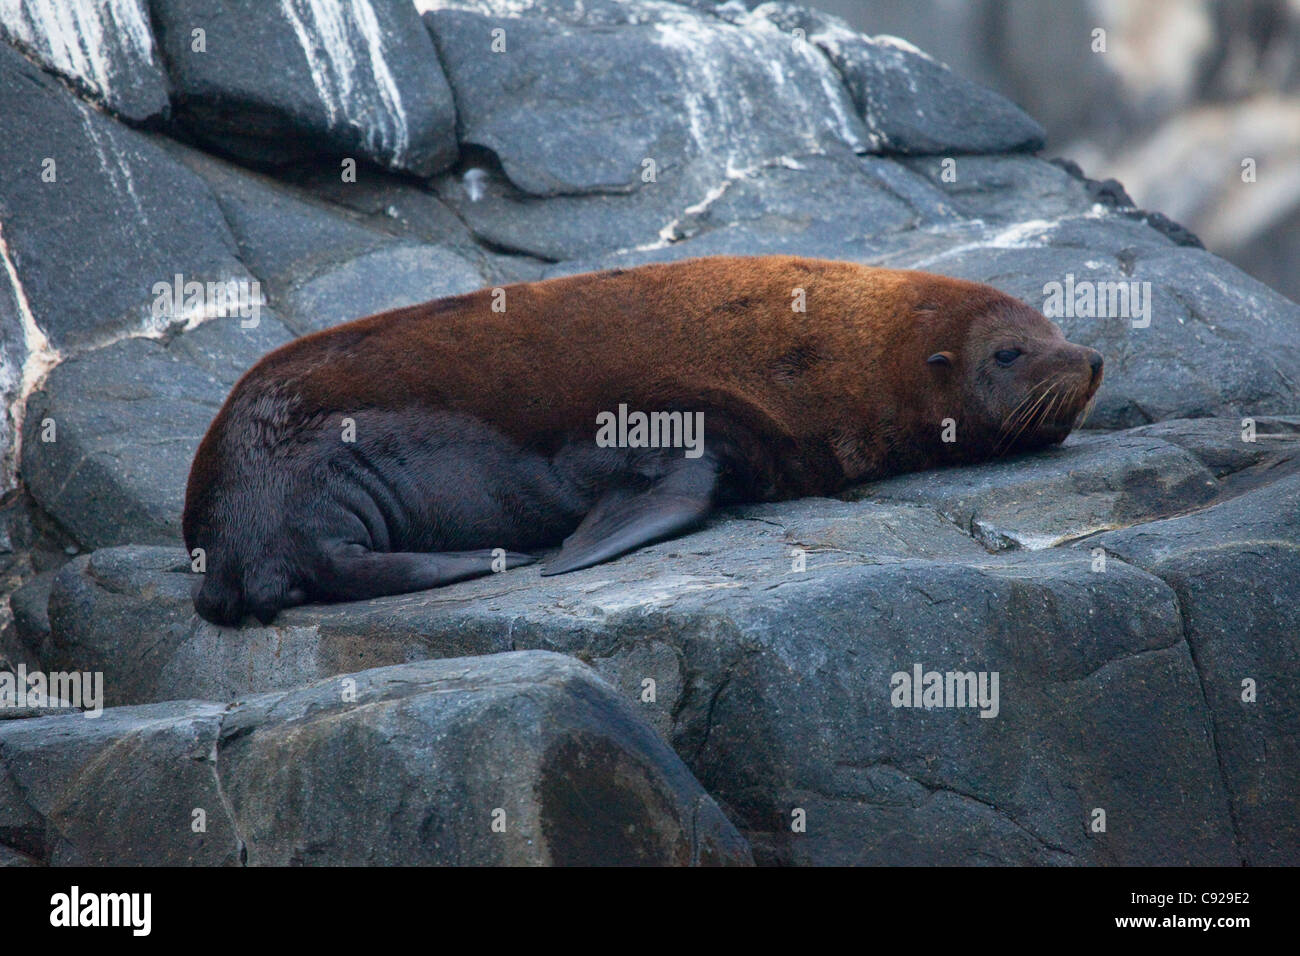 Le Chili, Parque Nacional Pan de Azucar, l'île de Pan de Azucar, sea lion resting on rock Banque D'Images